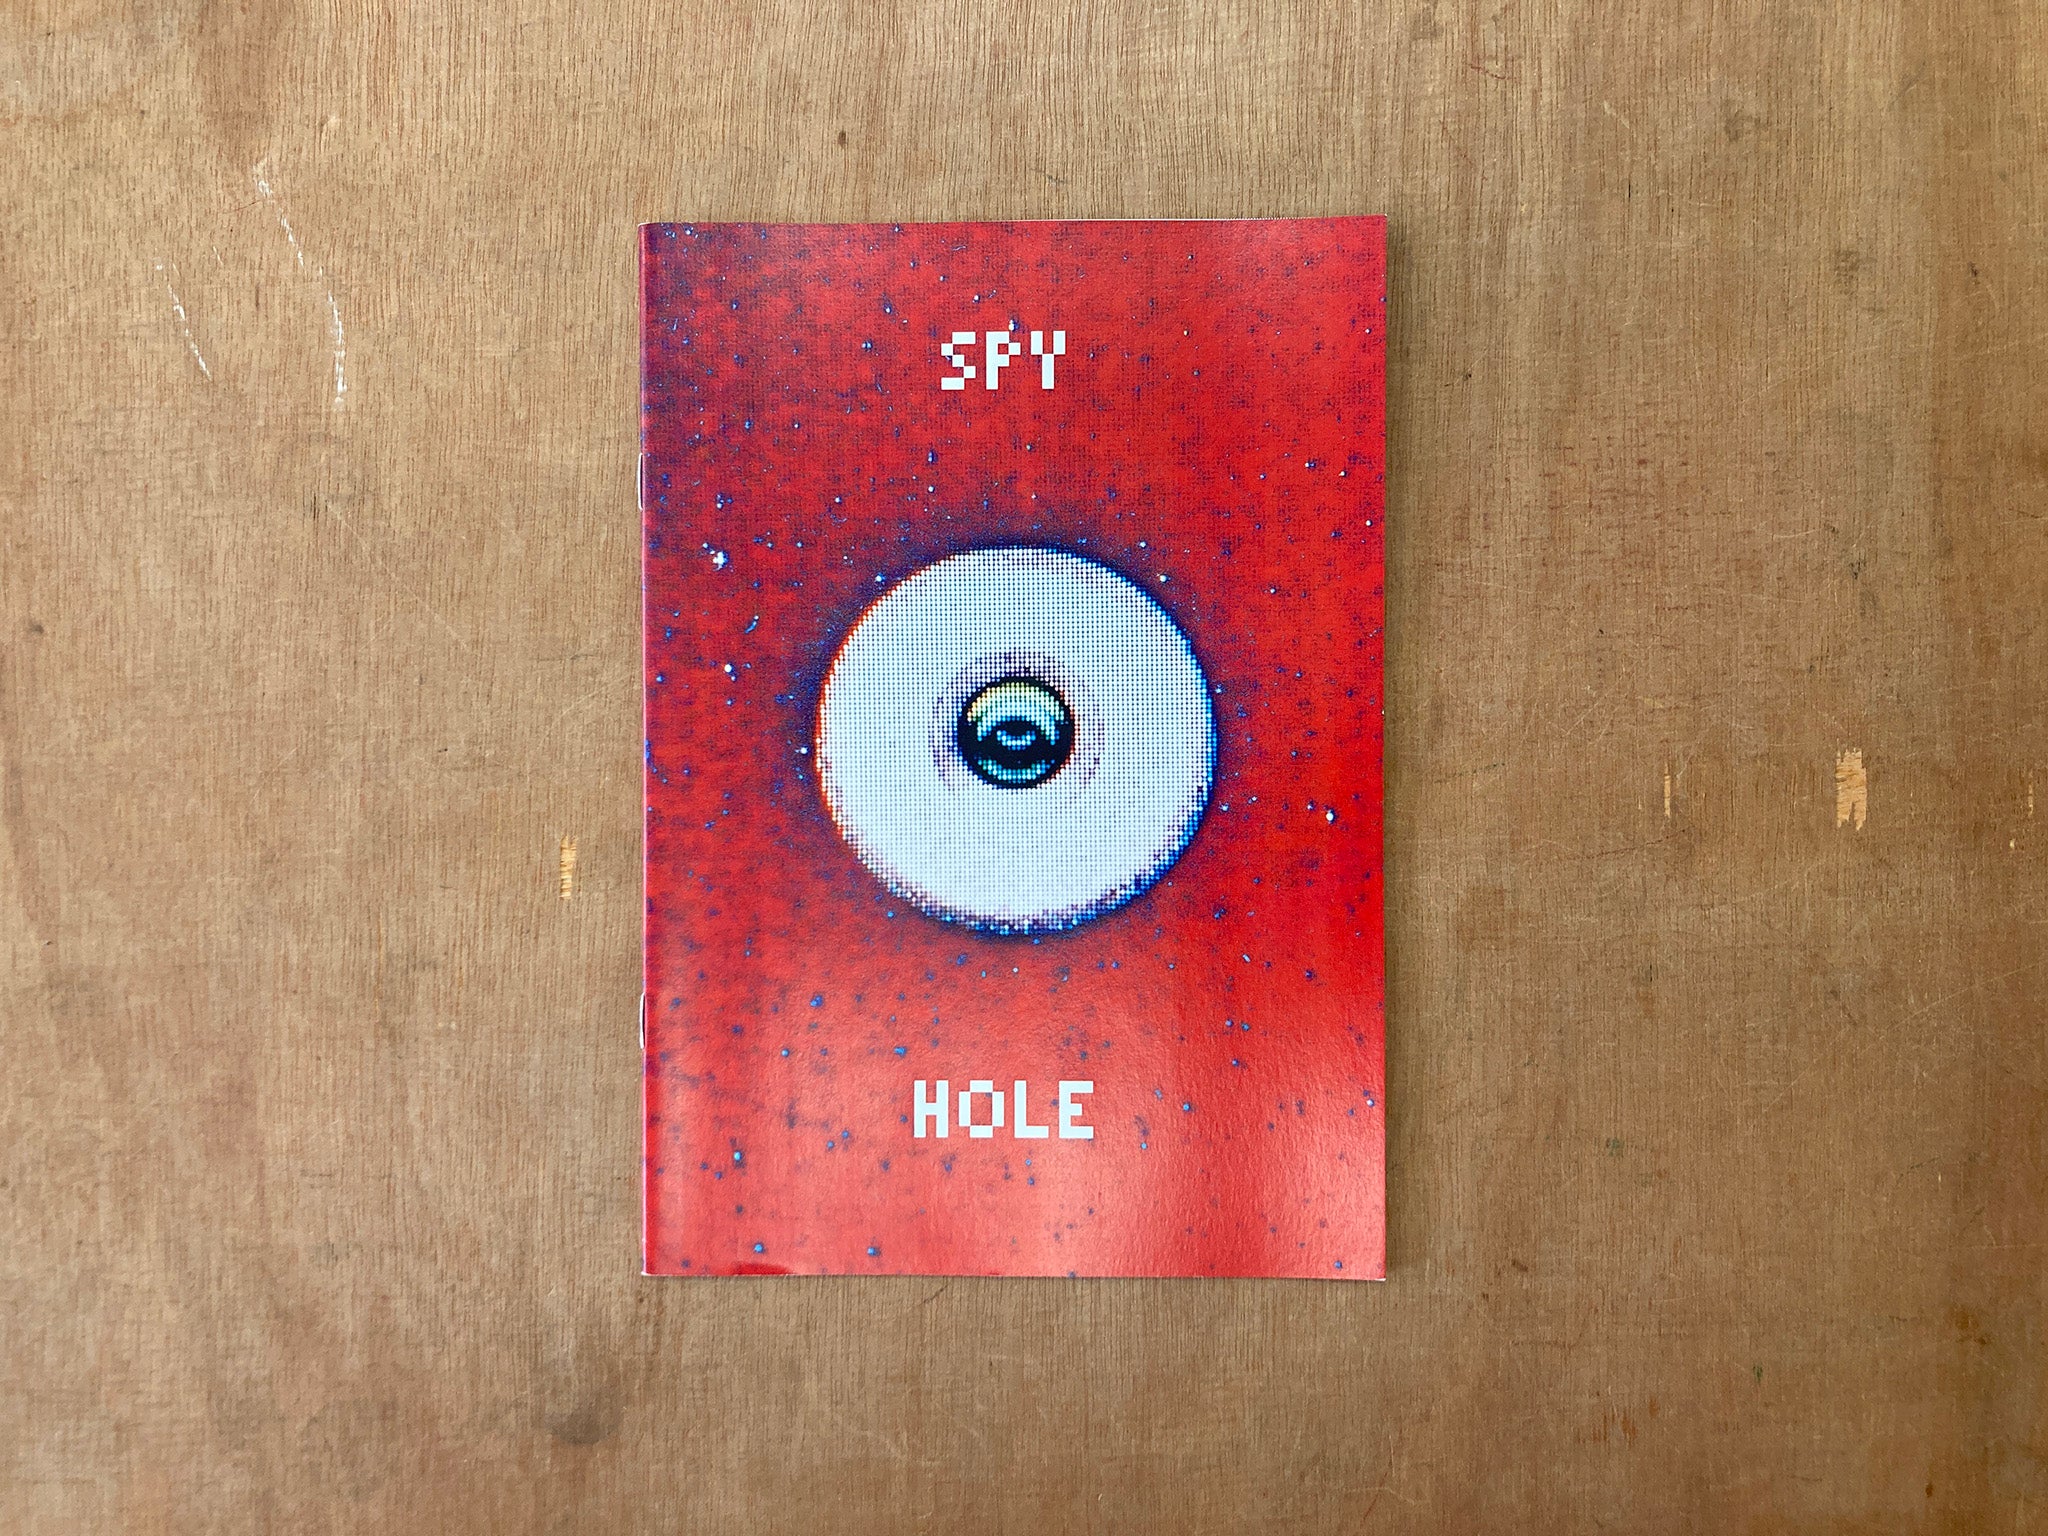 SPY HOLE by Lewis Bush